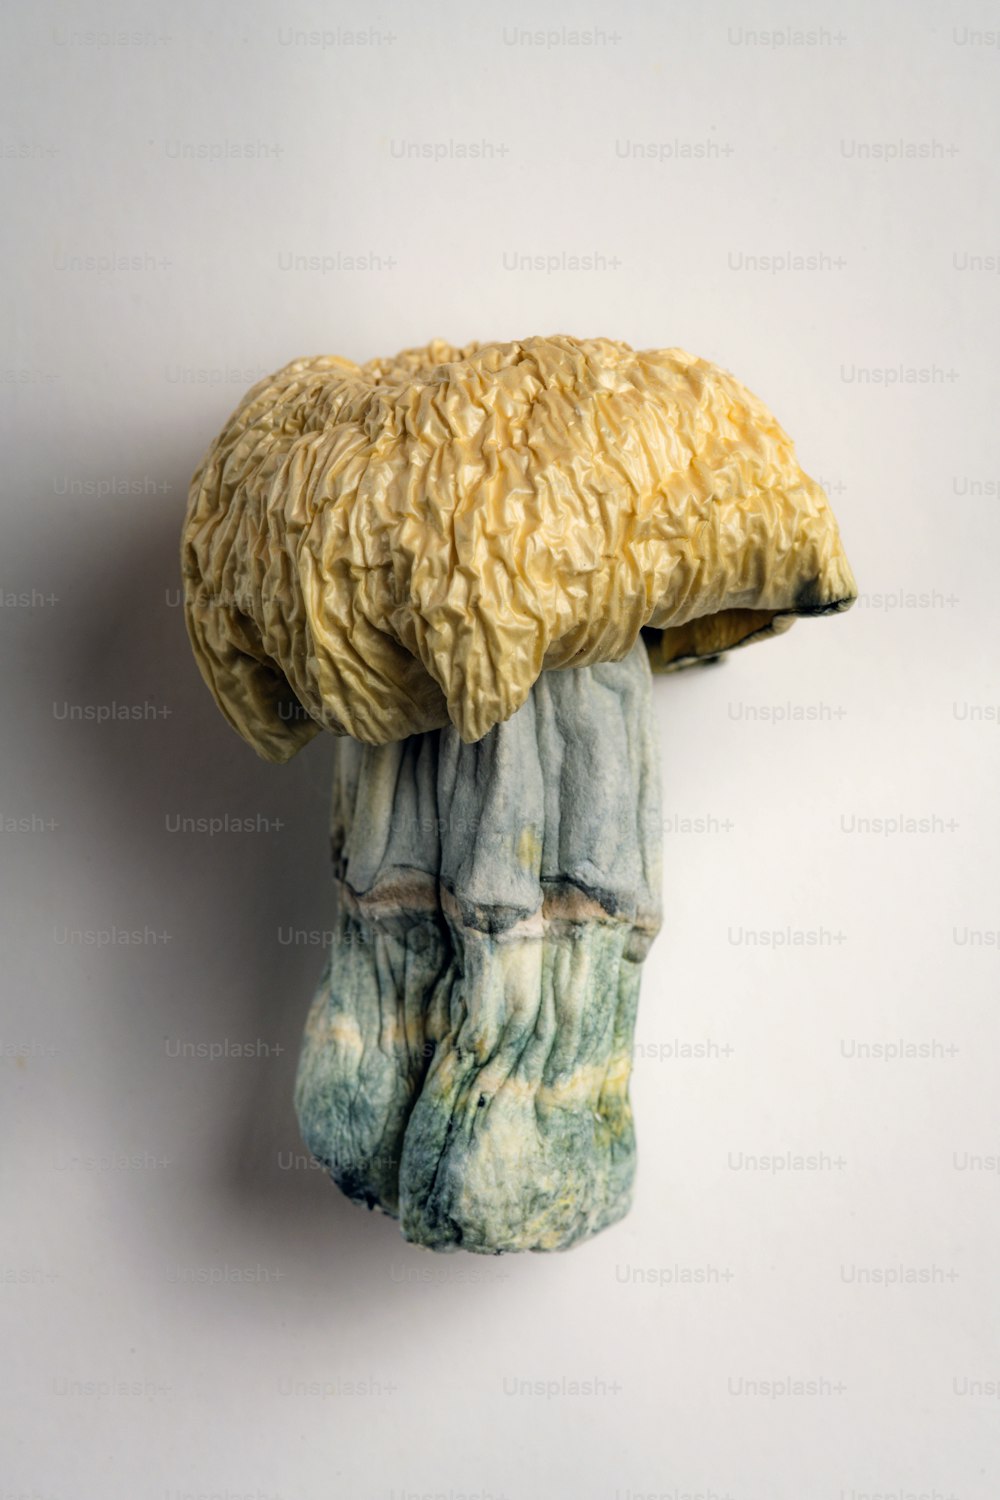 uma escultura de um cogumelo está pendurada em uma parede